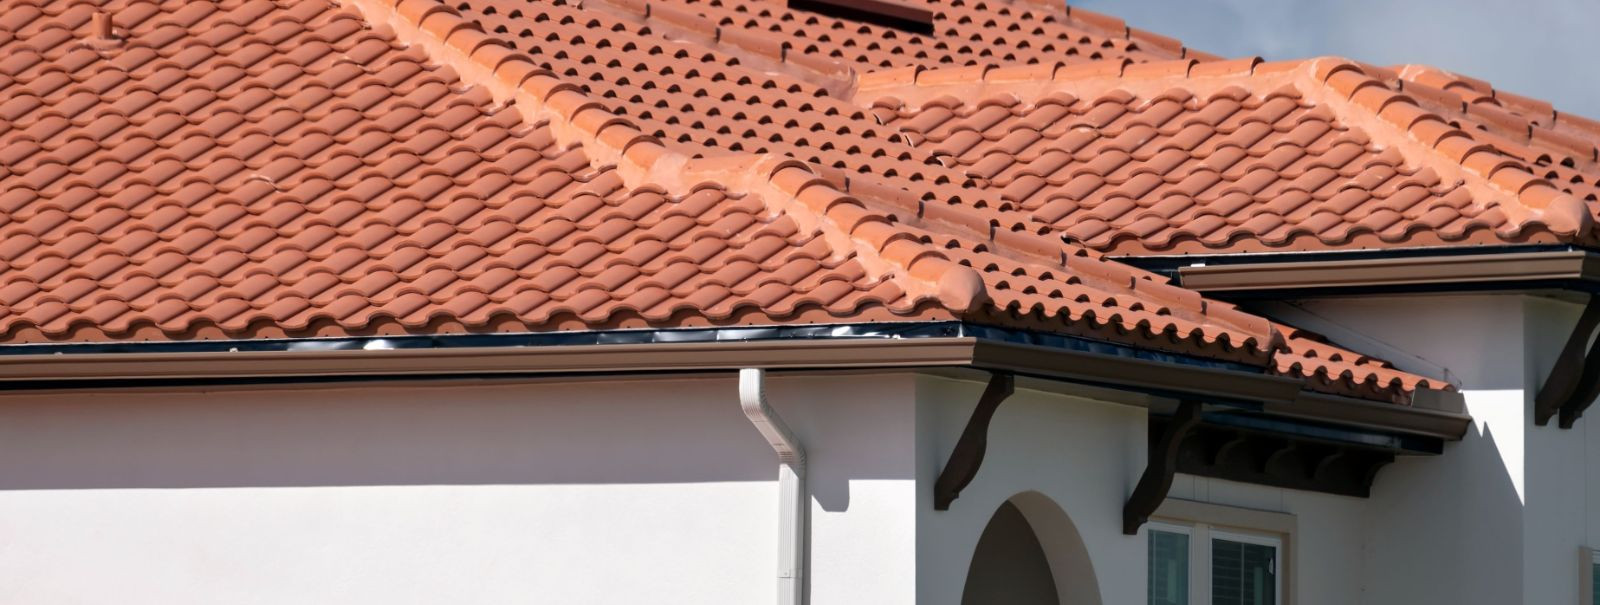 Õige katusematerjali valimine on oluline teie kodu ohutuse, vastupidavuse ...